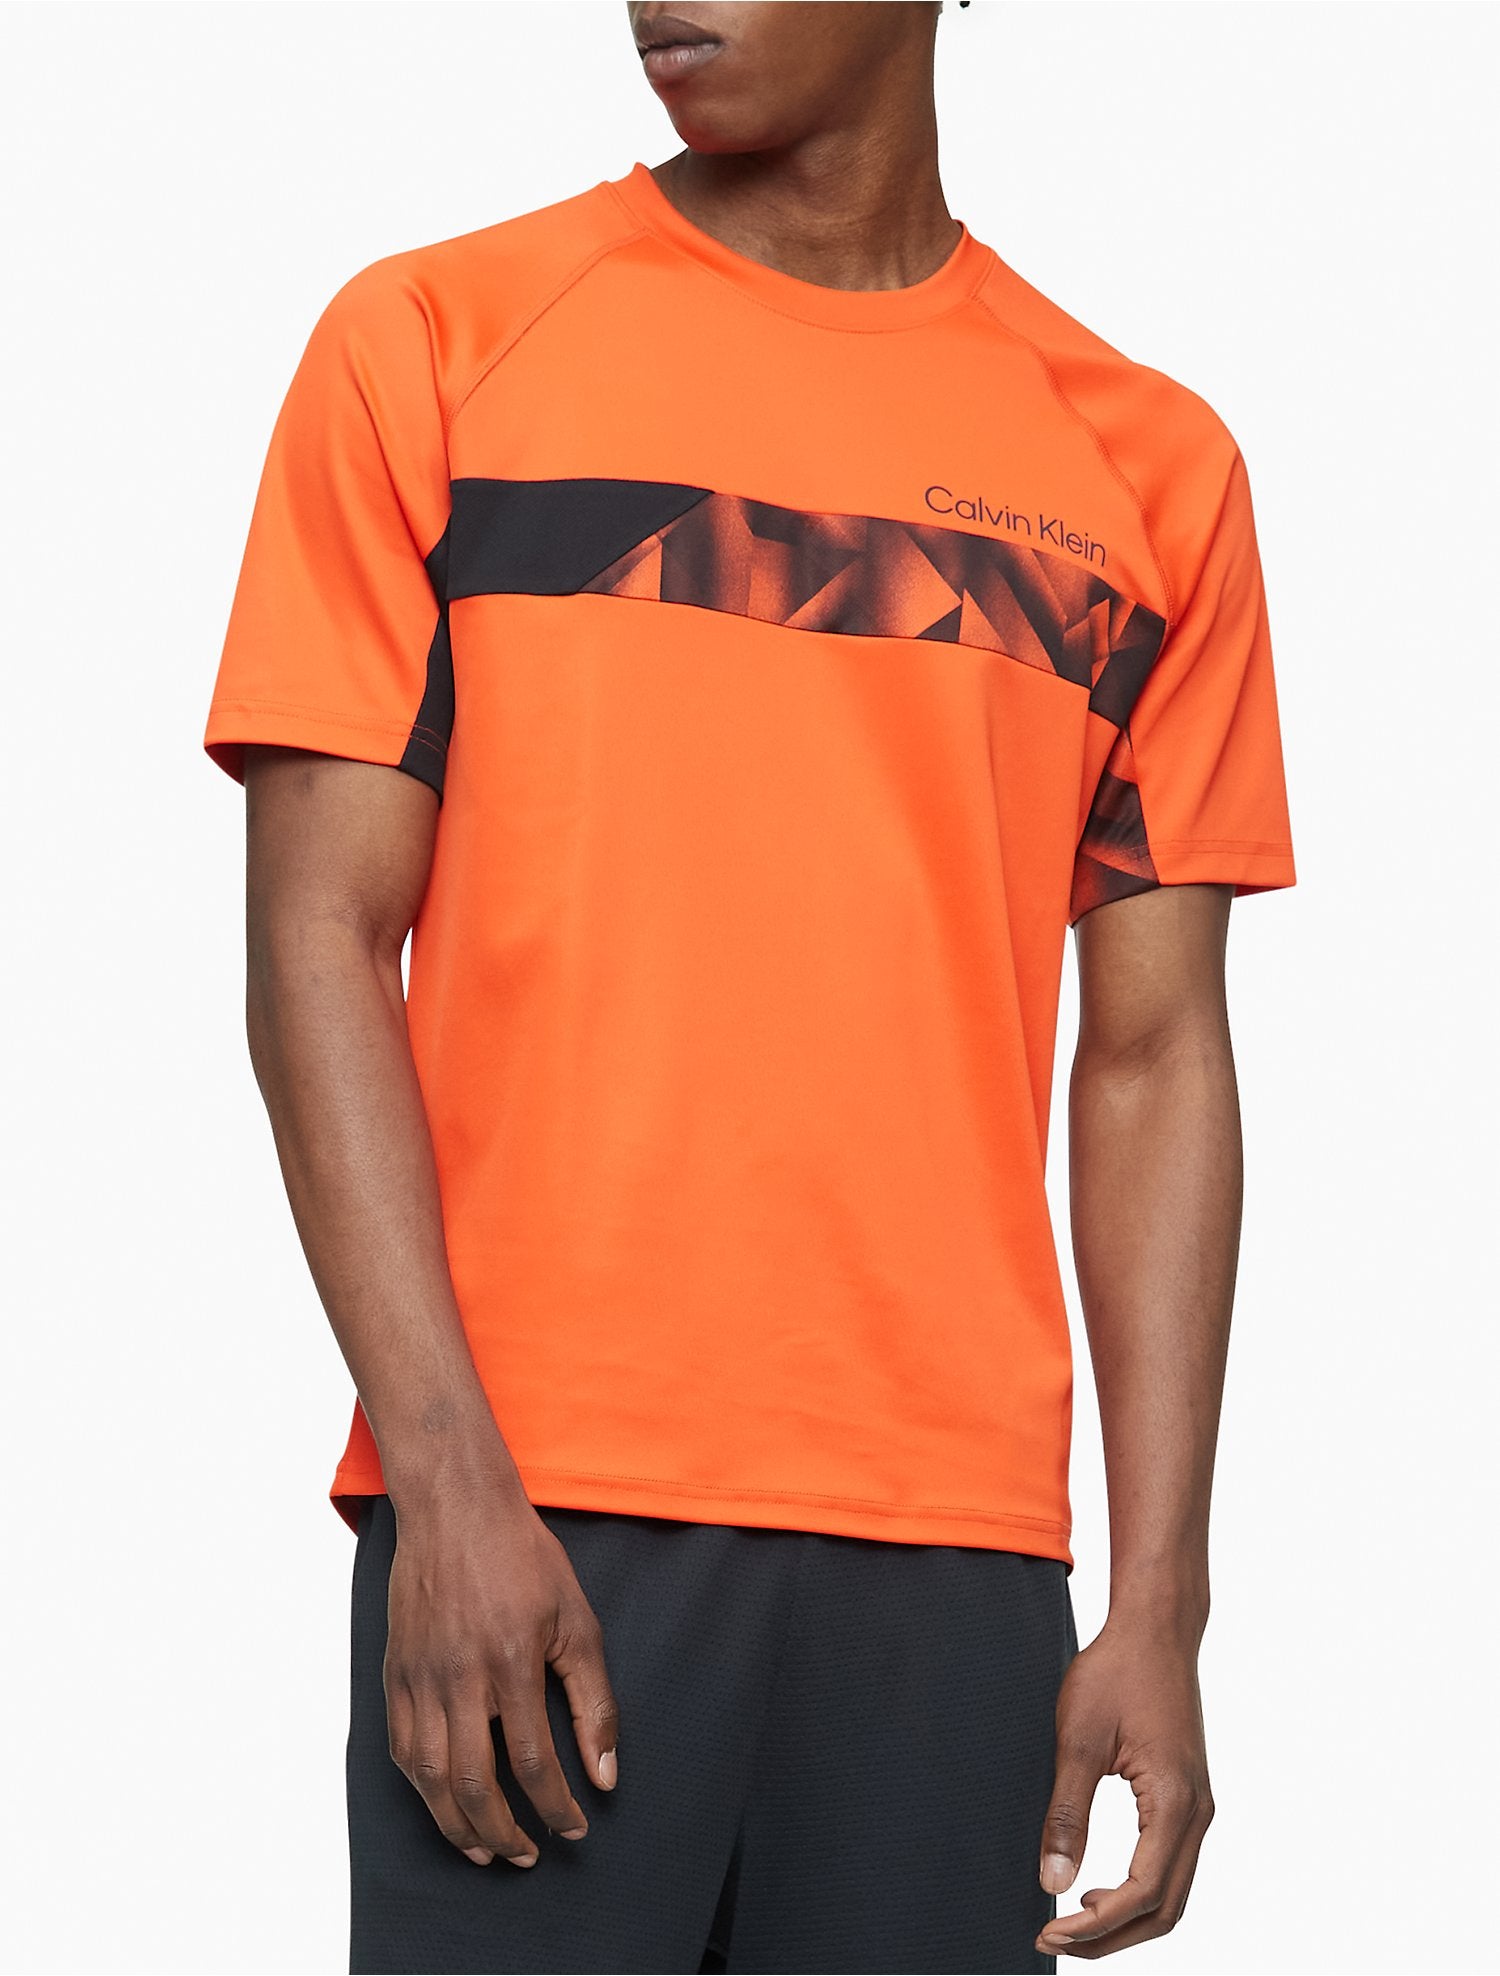 Calvin Klein Performance Graphic Stretch T-Shirt - Men